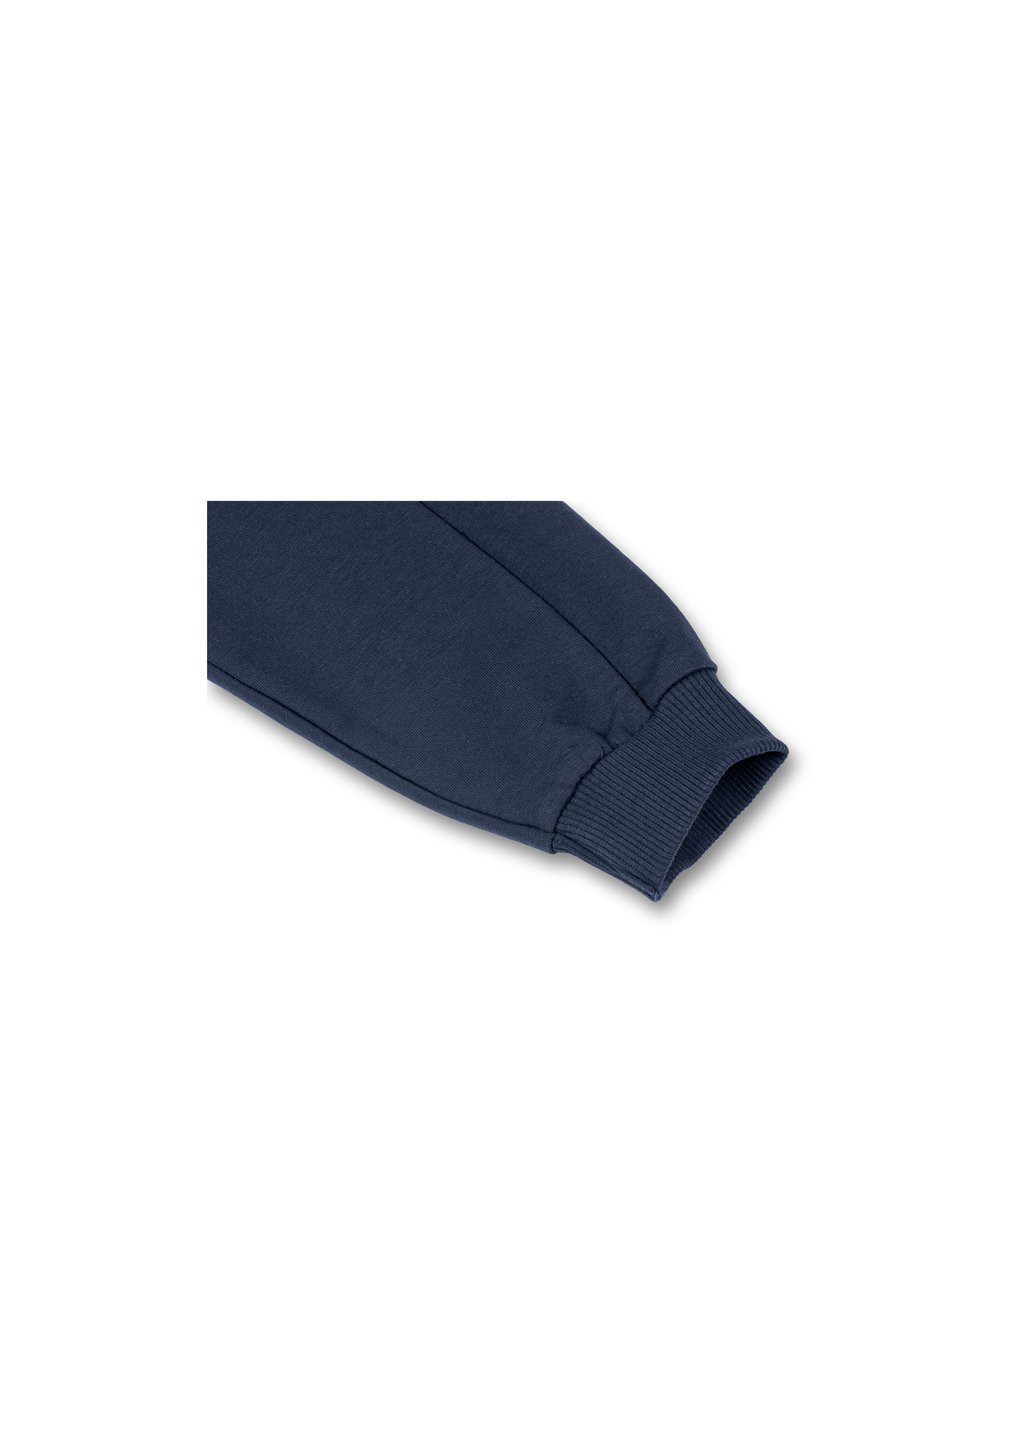 Блакитний демісезонний набір дитячого одягу кофта та брюки блакитний "brooklyn" (7882-86b-blue) Breeze